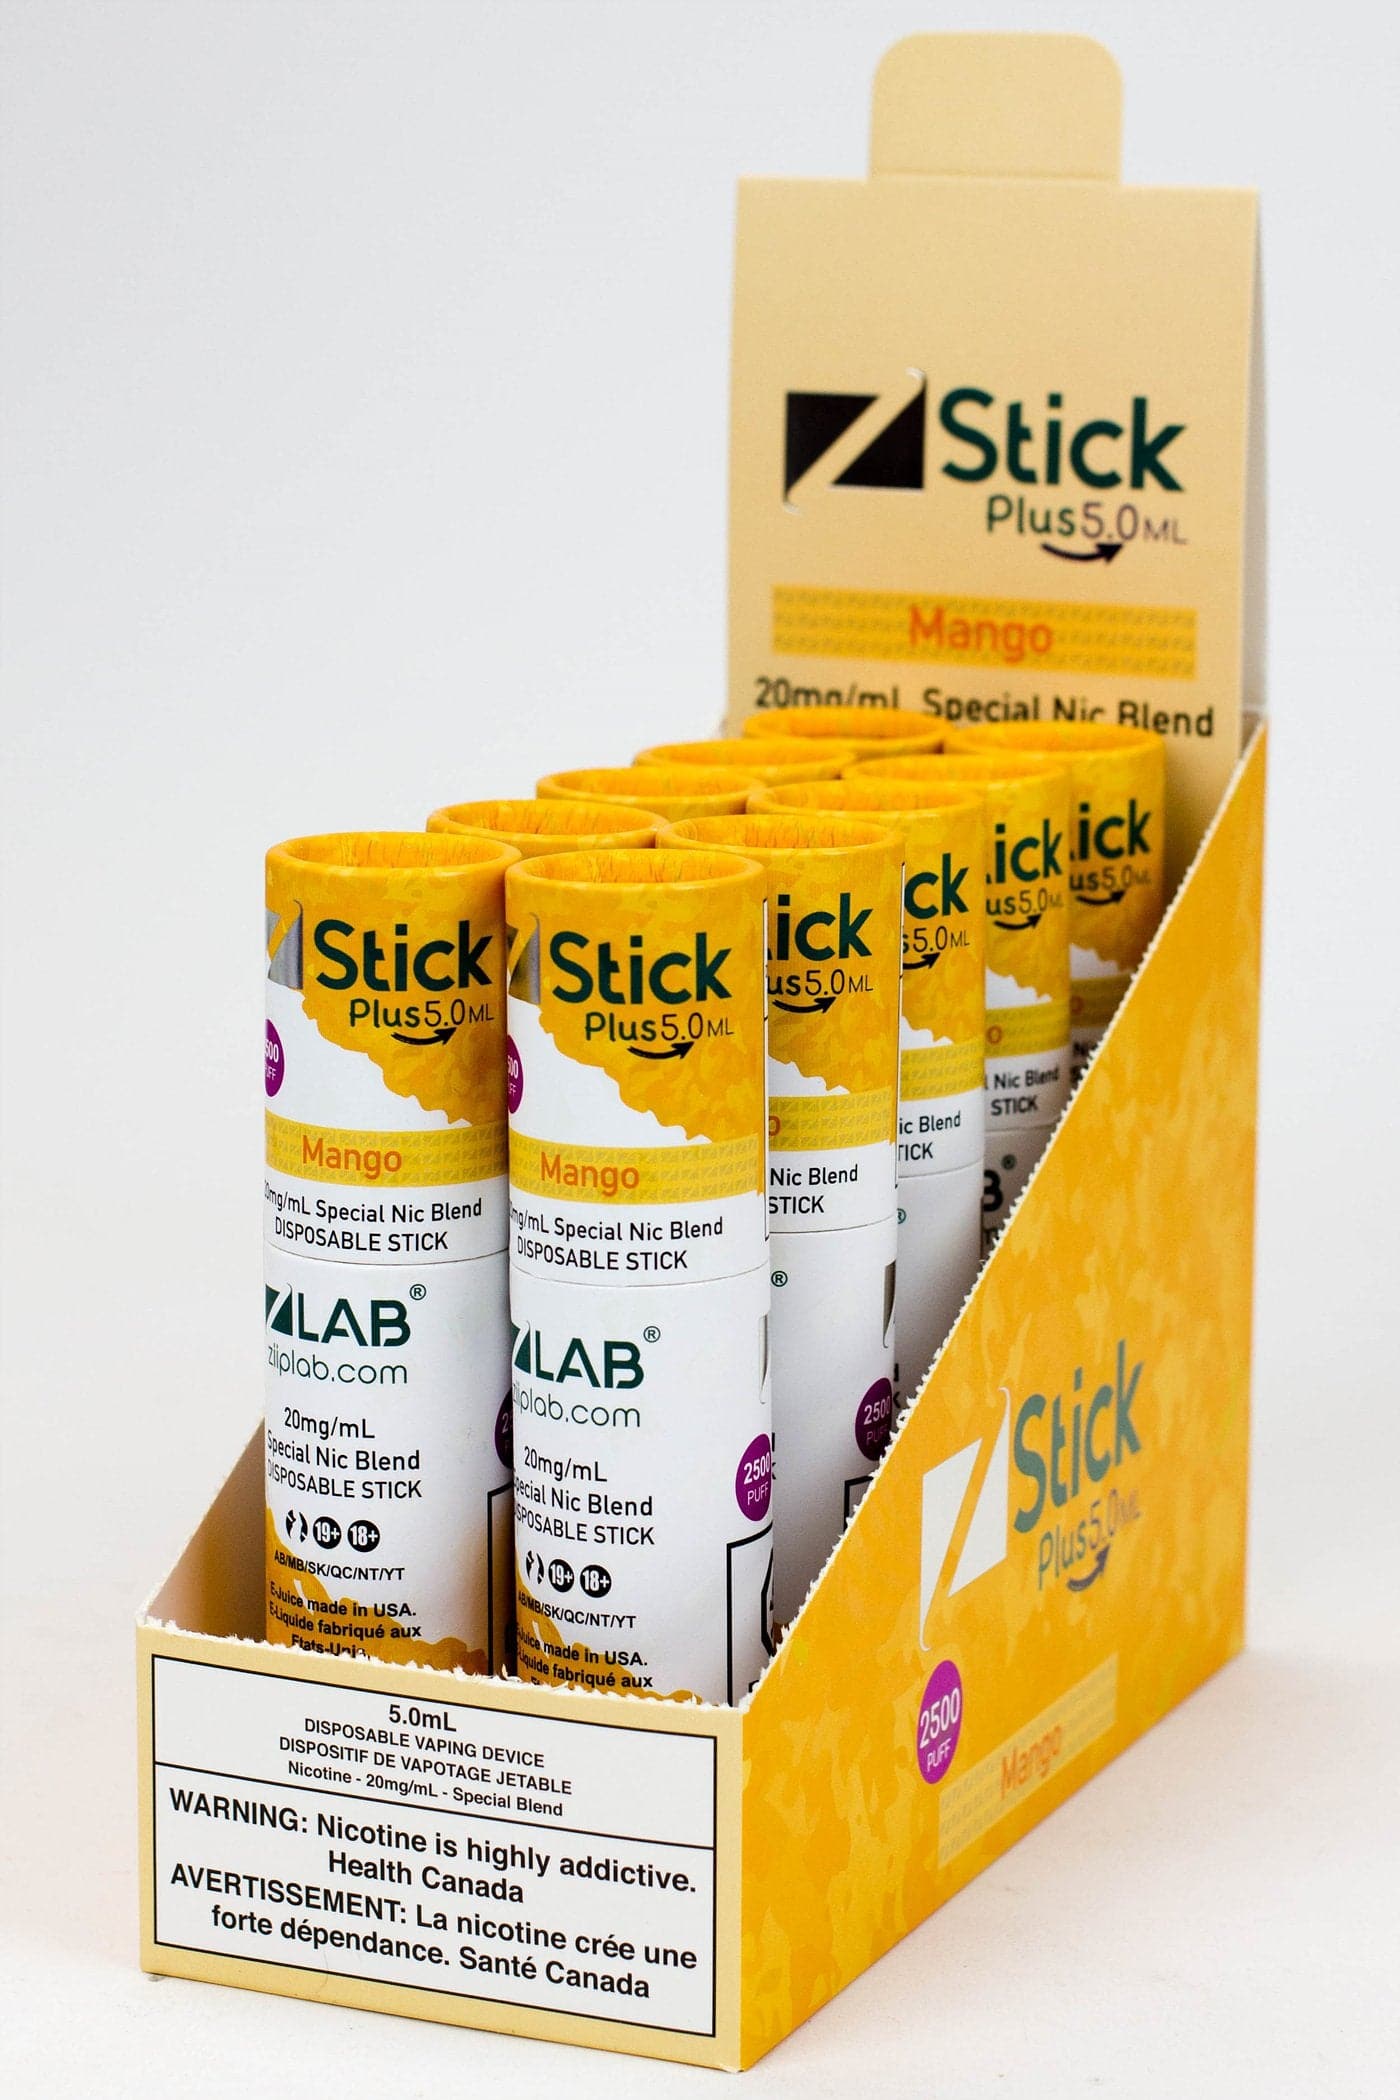 ZSTICKS PLUS 2500 Puffs 20 mg/mL Special Nic Blend